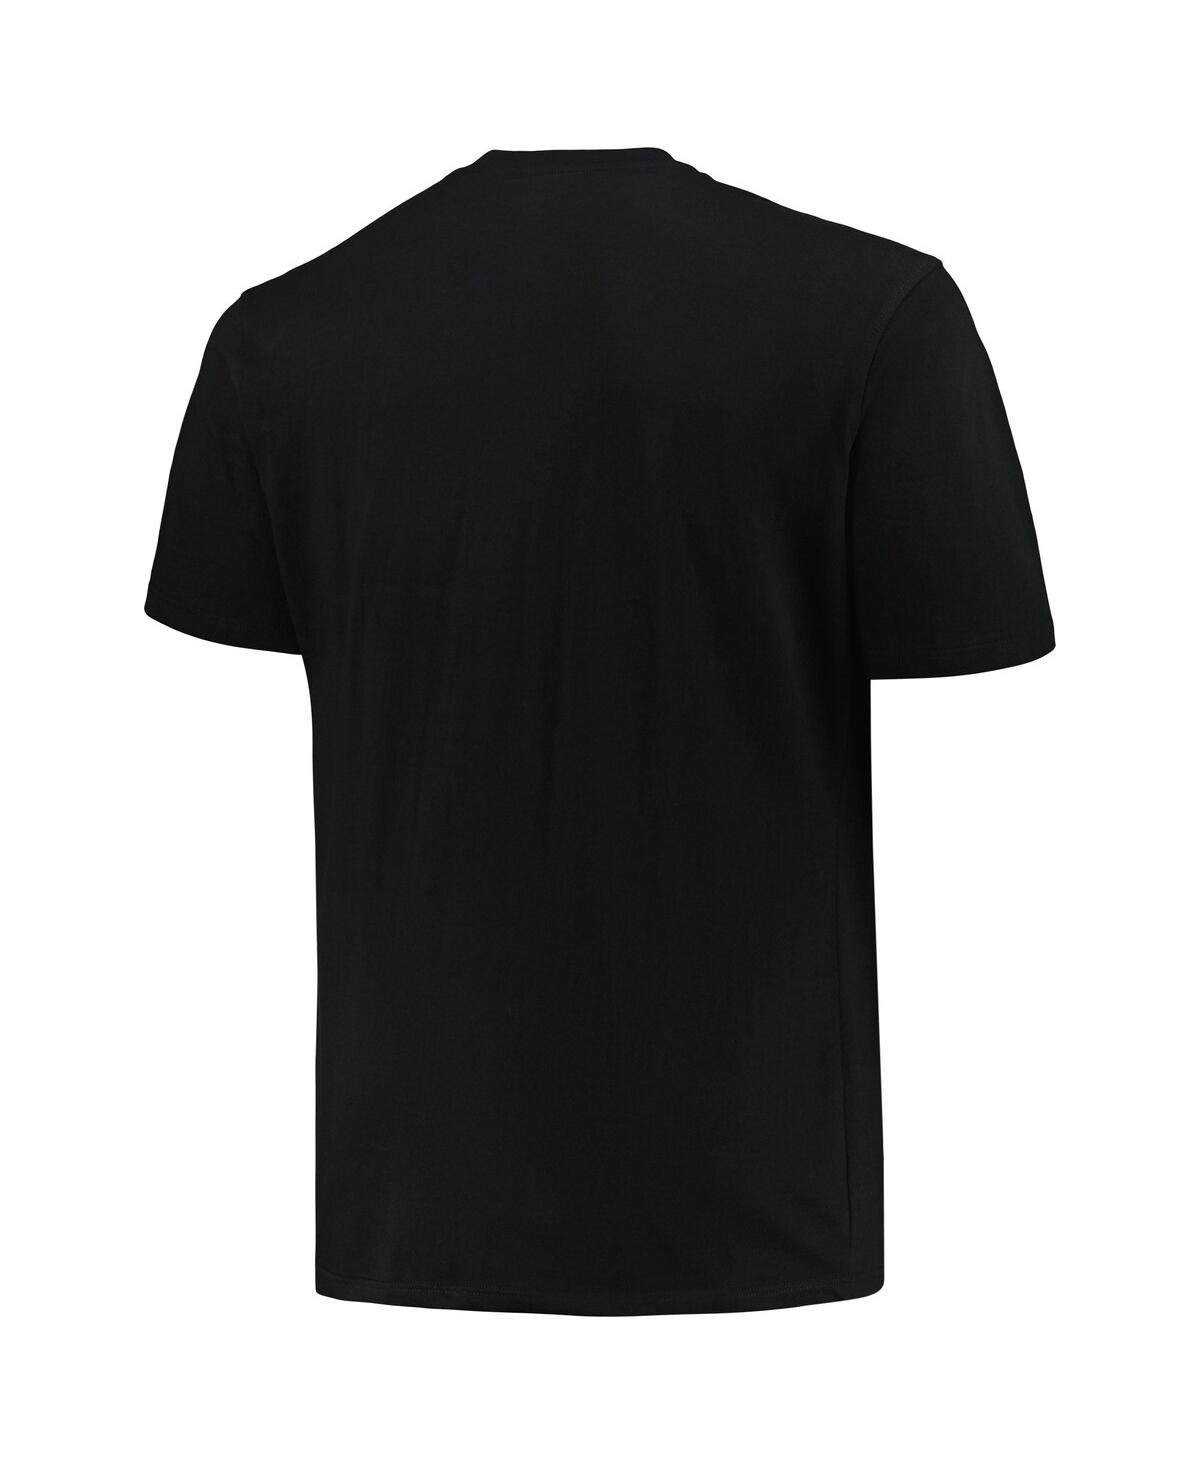 Shop Fanatics Men's Black Cleveland Browns Big Tall Pop T-shirt